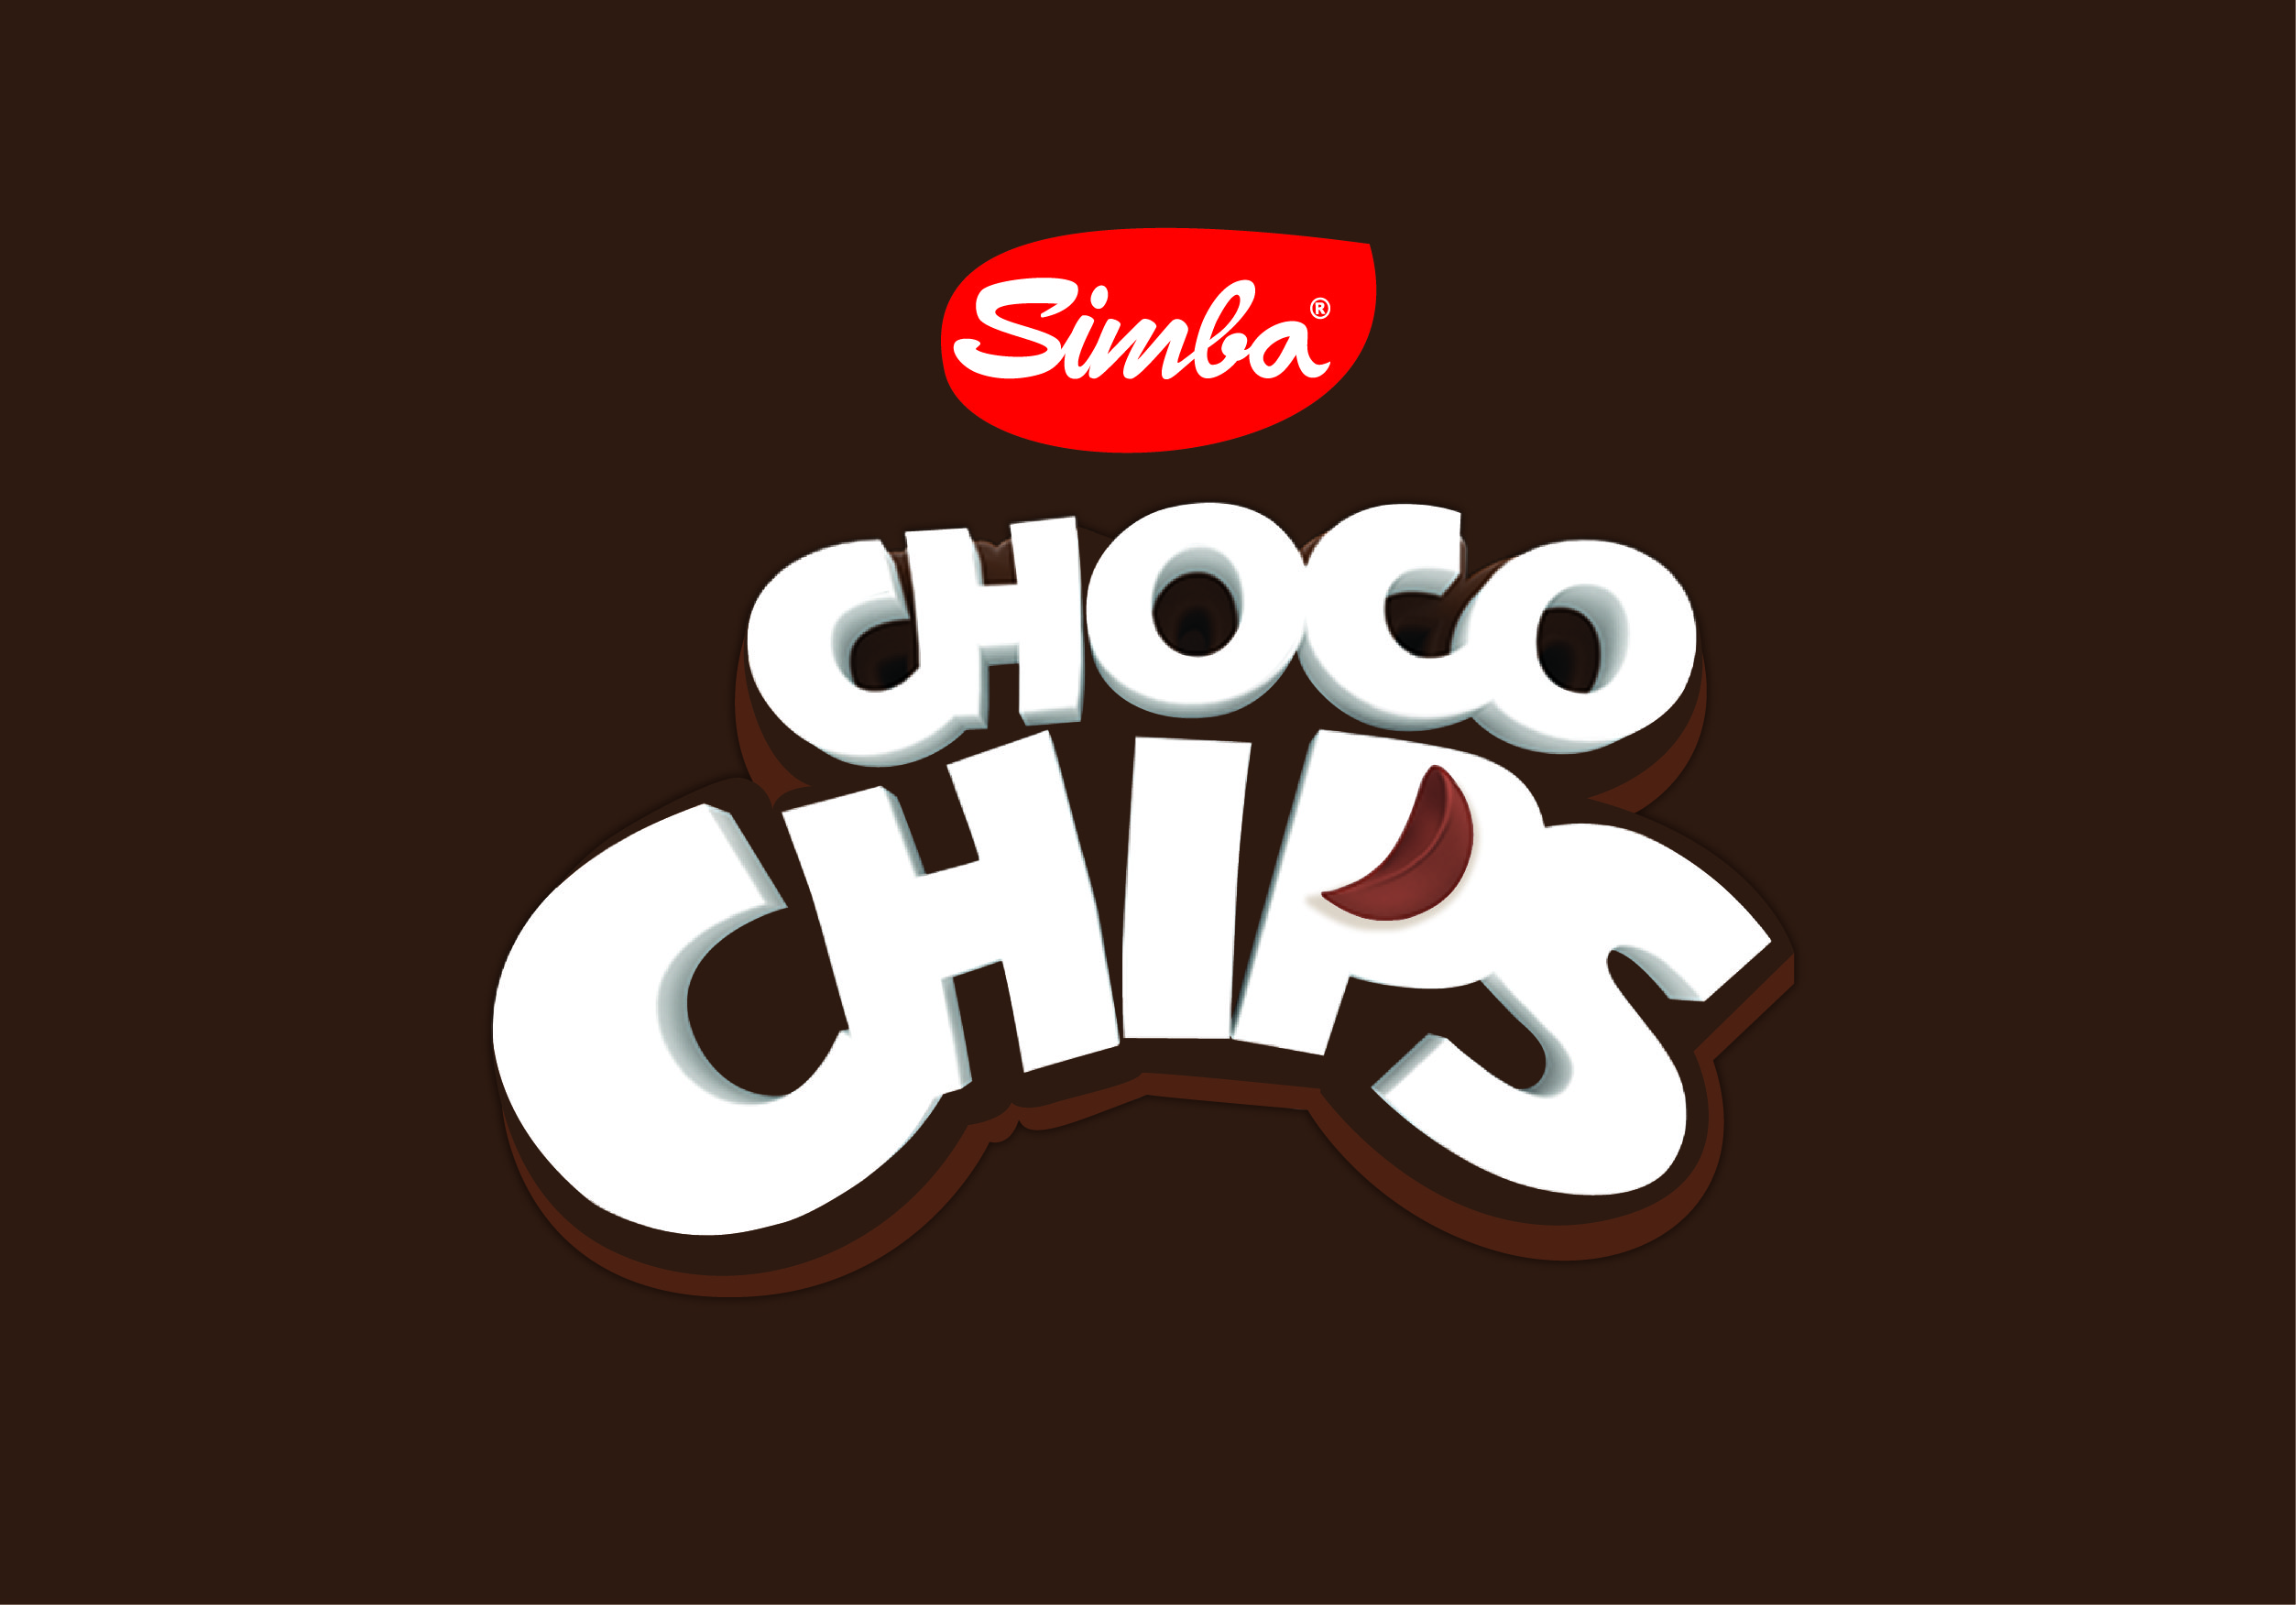 Branding - Simba Chocochips